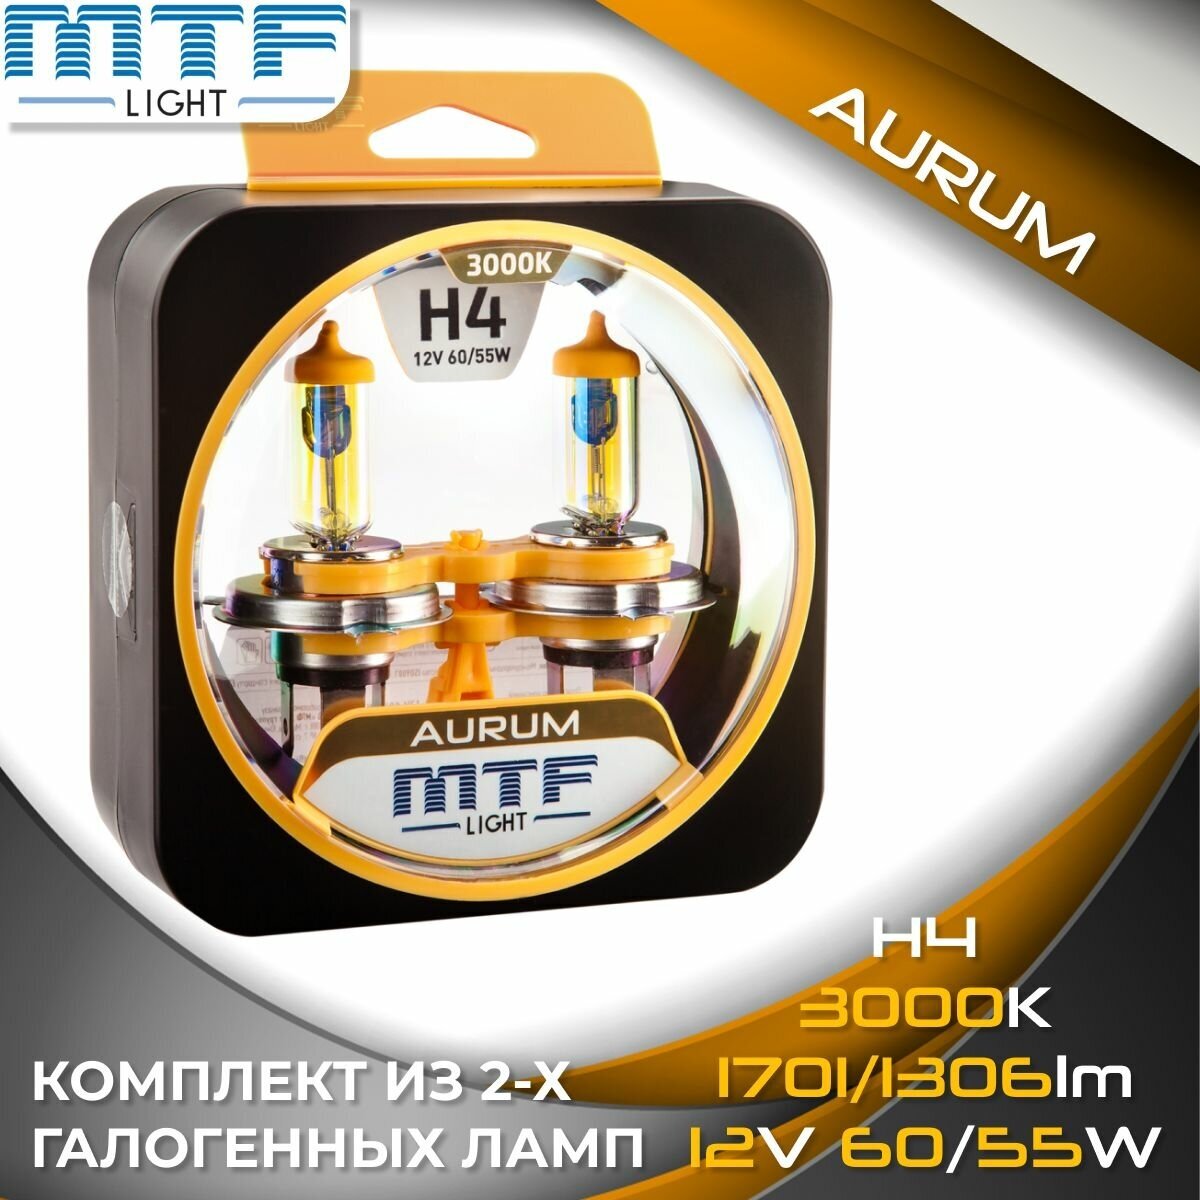 Галогенные автолампы MTF Light серия AURUM H4, 12V, 60/55W (комплект 2 шт.)